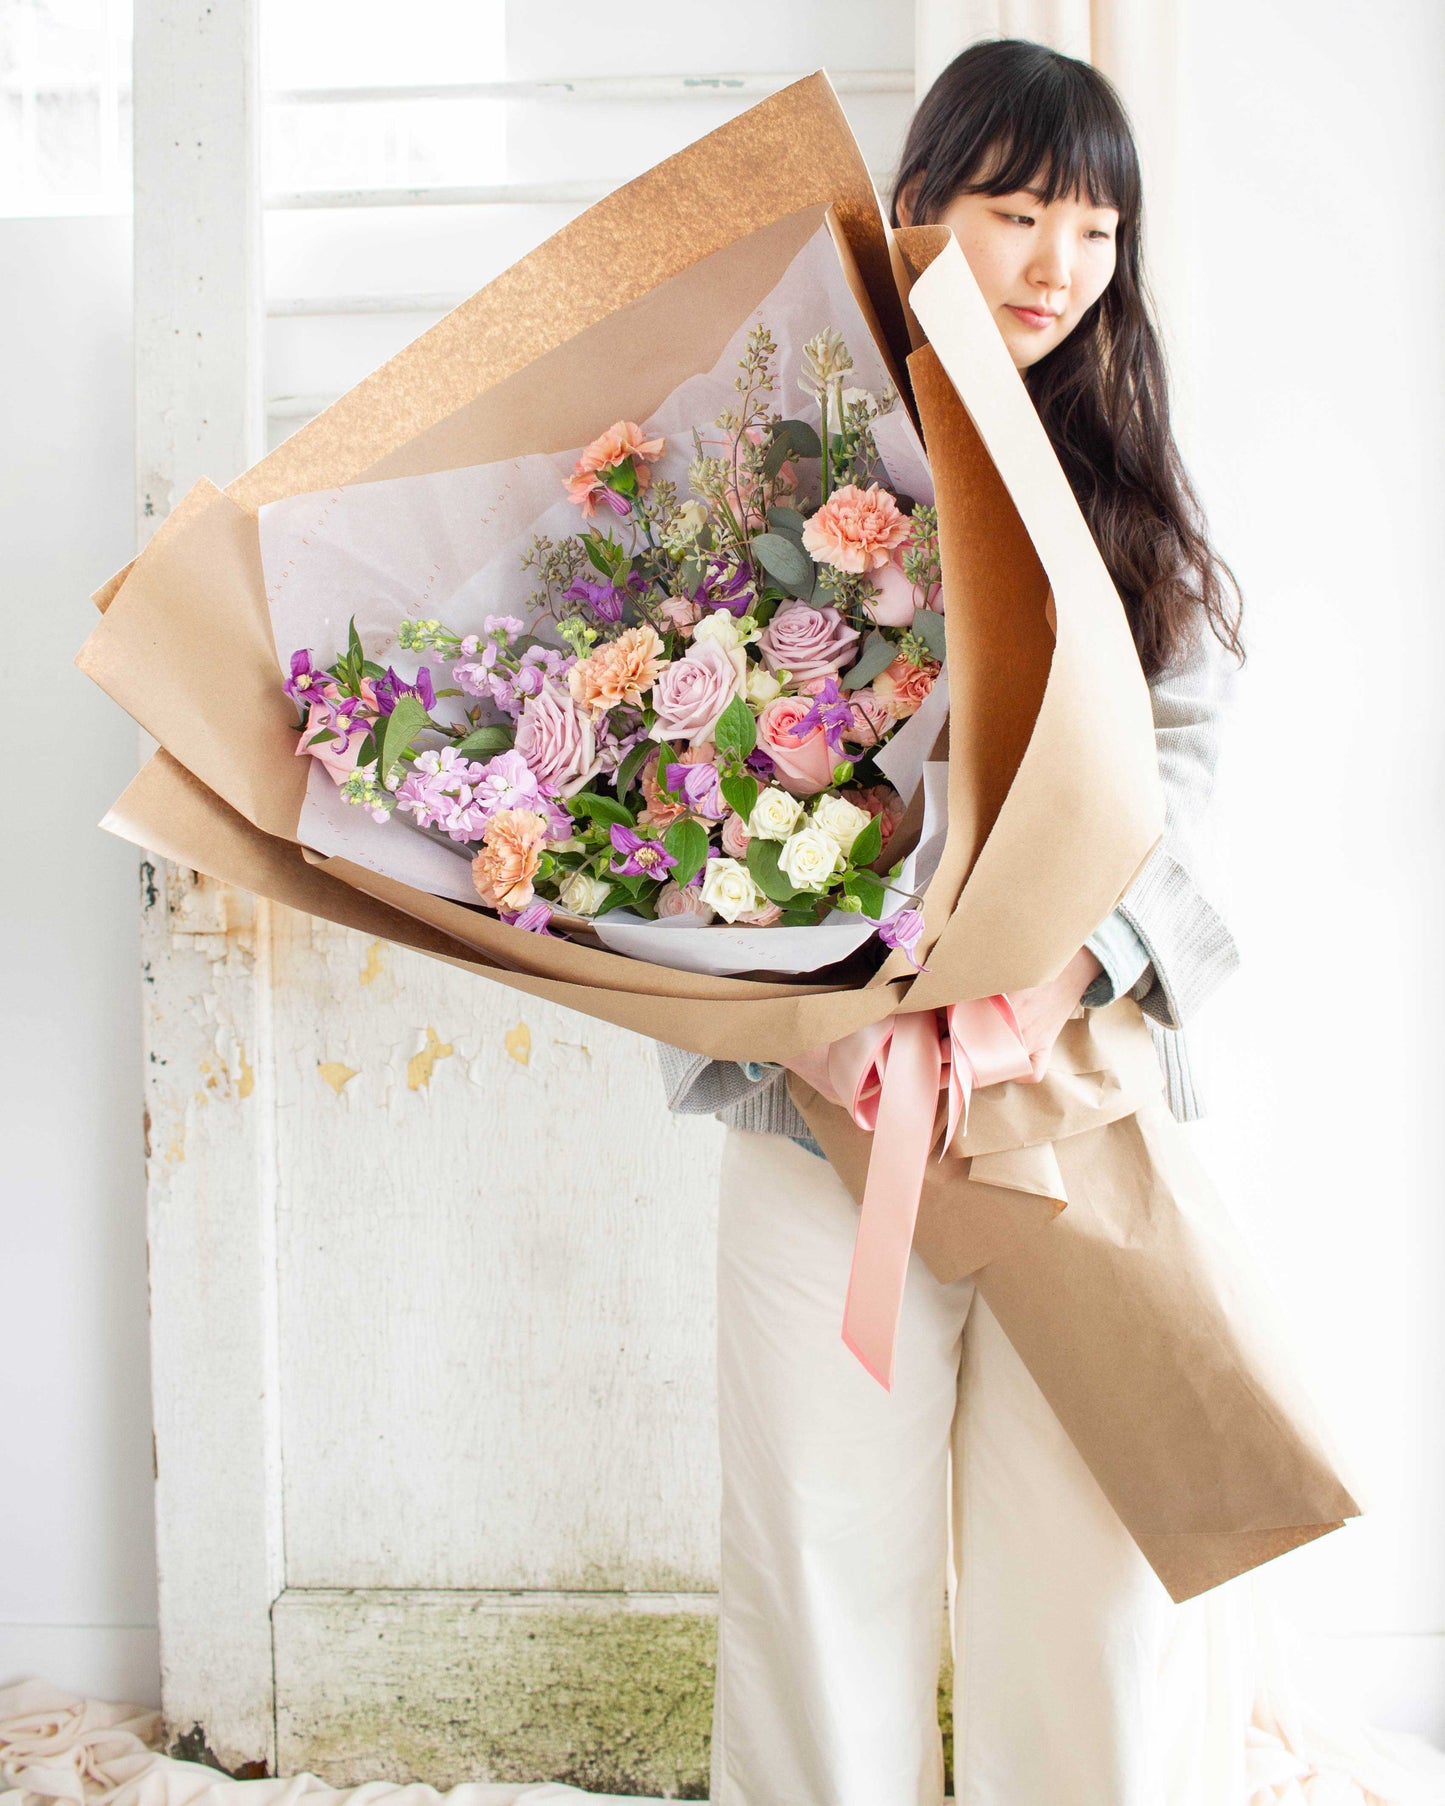 7. Signature Giant Bouquet